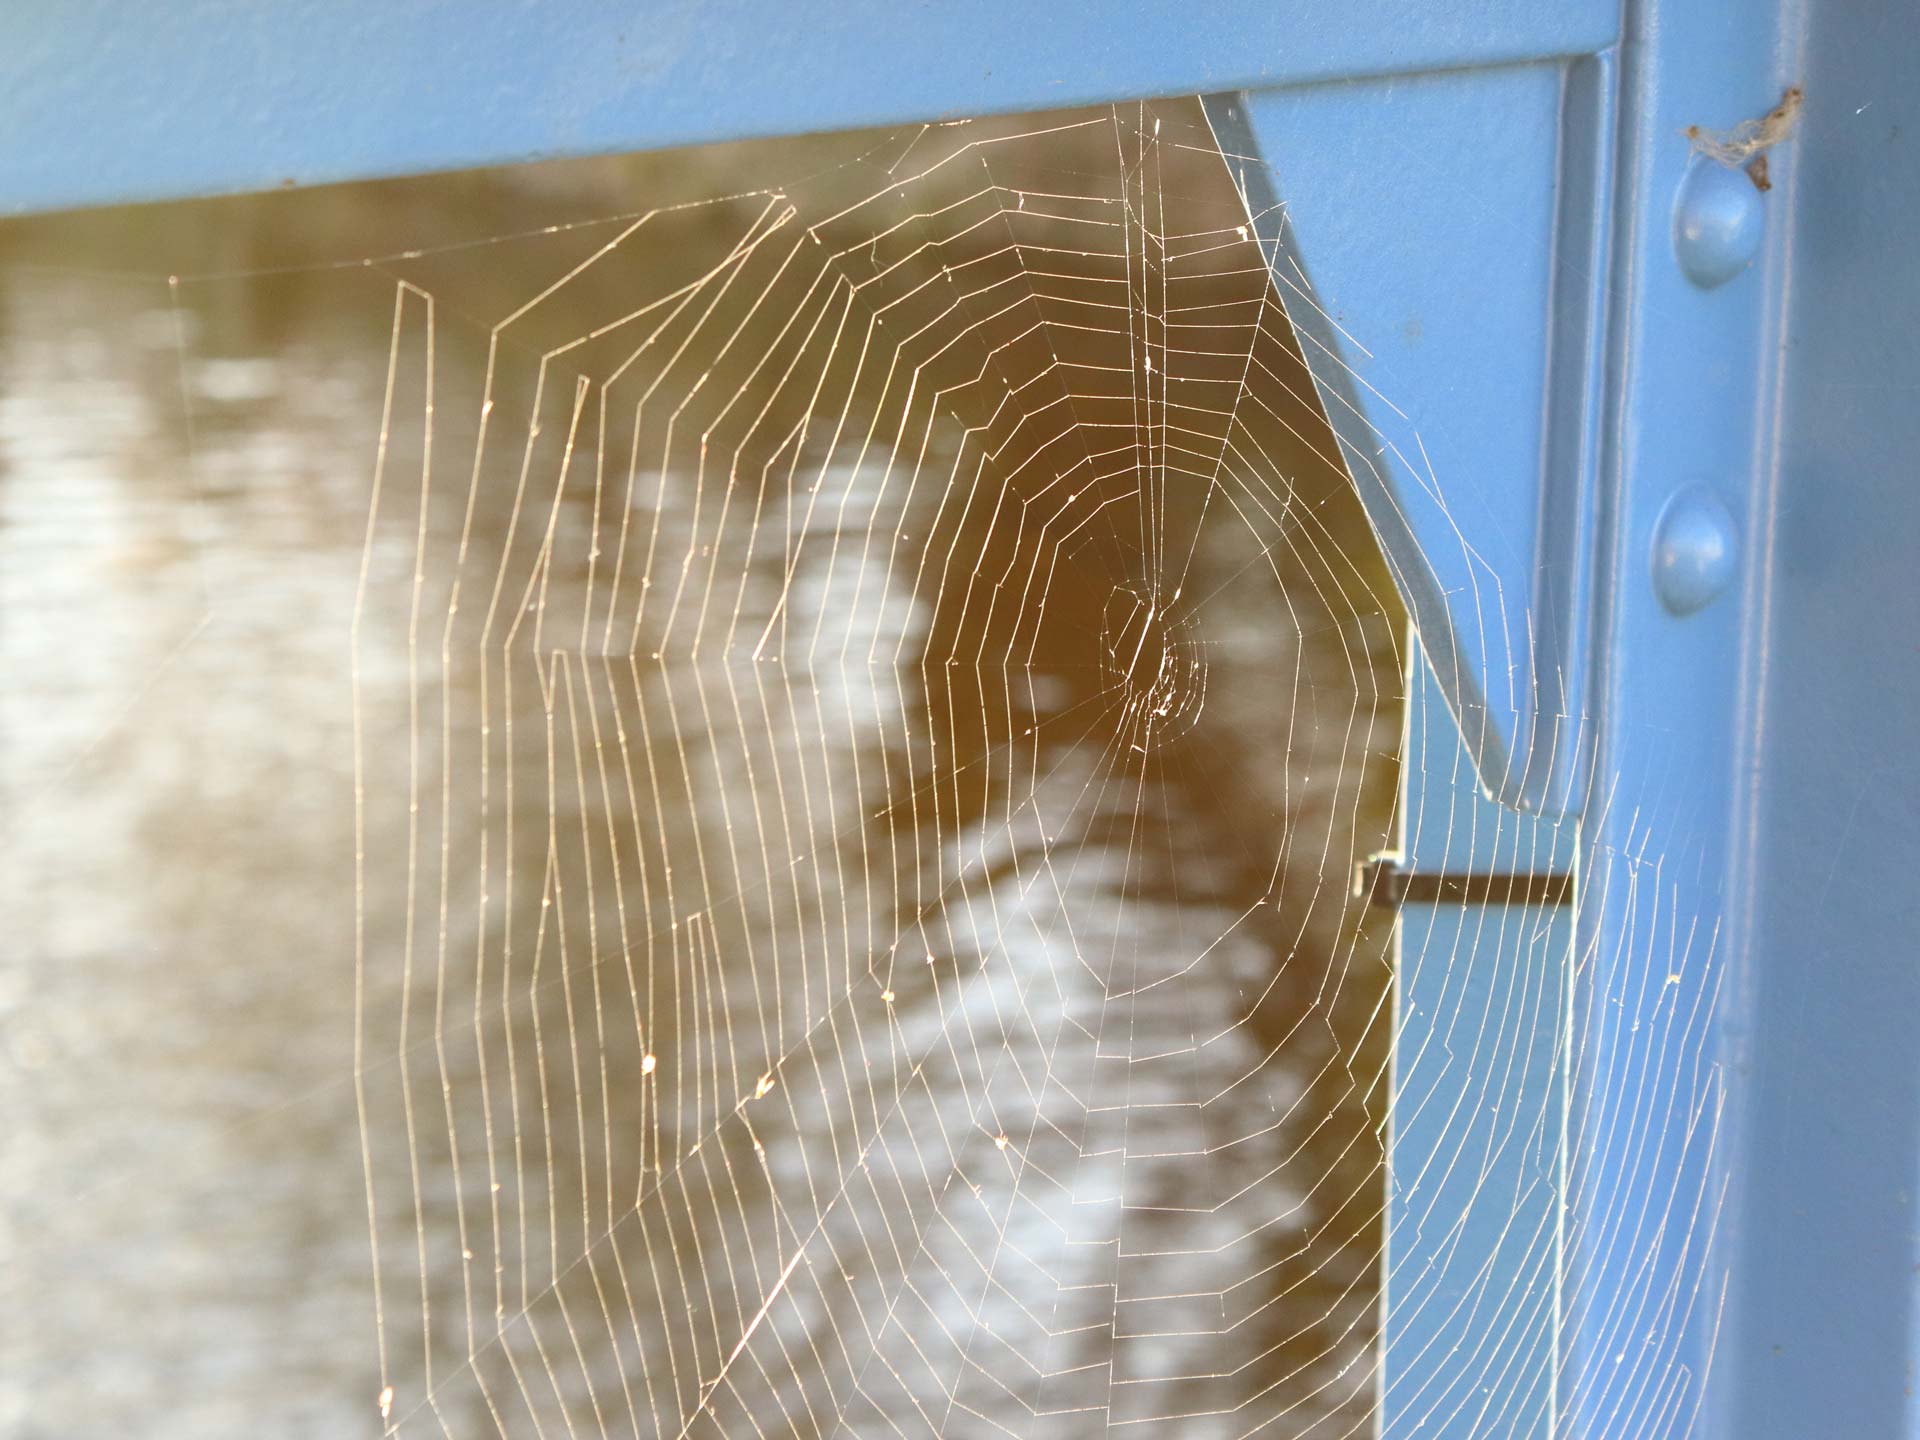 Une toile d'araignée construite sur un coin de fenêtre